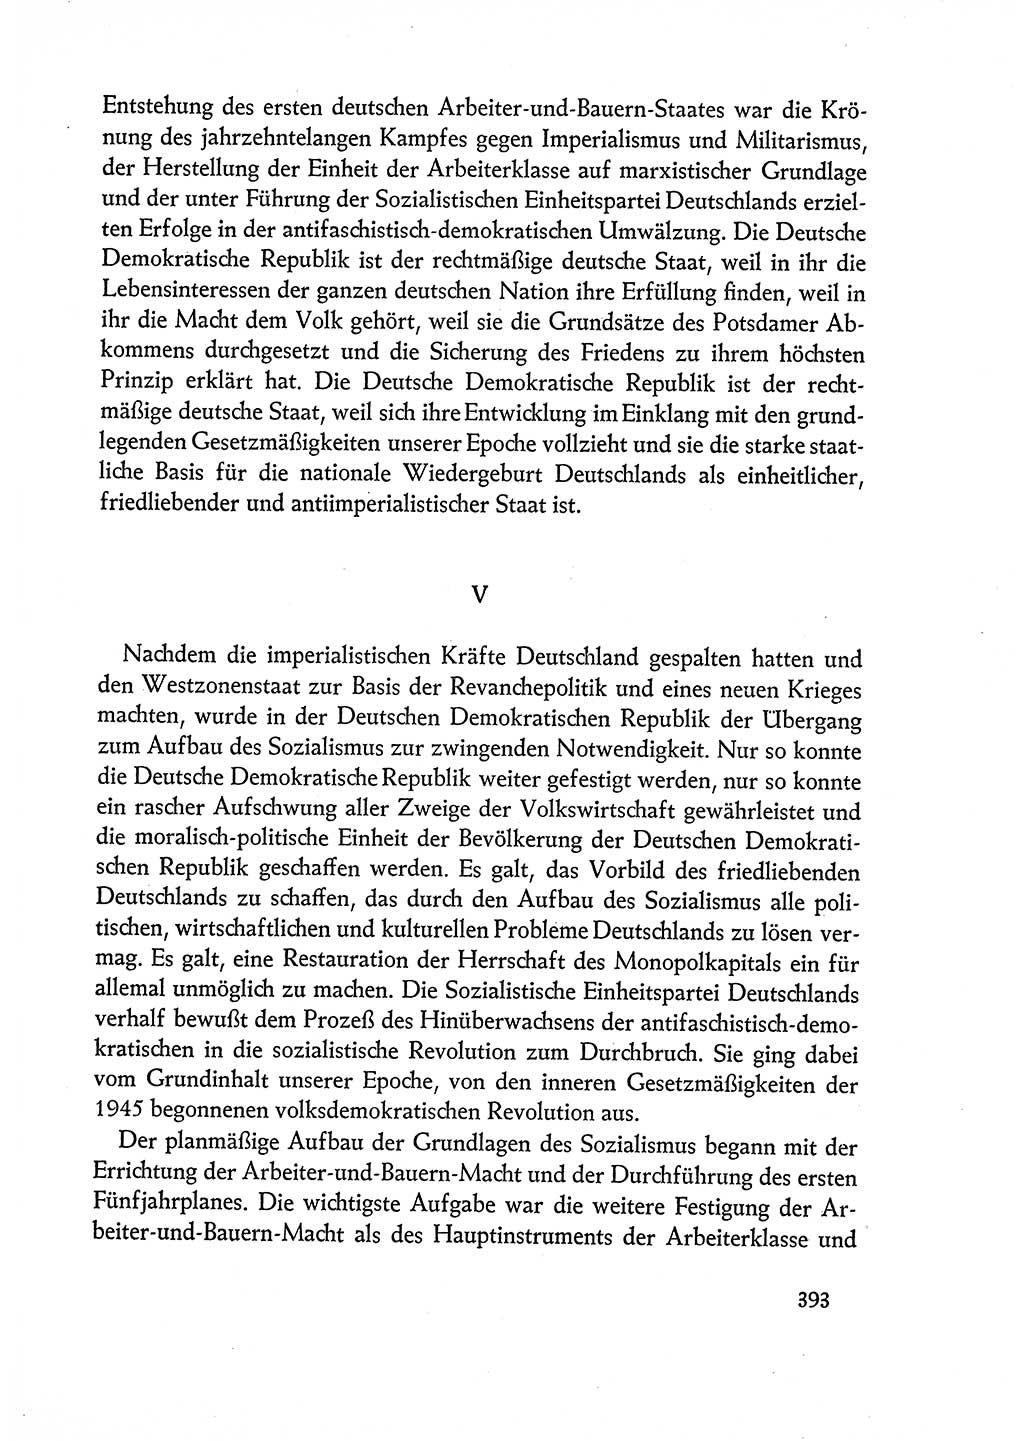 Dokumente der Sozialistischen Einheitspartei Deutschlands (SED) [Deutsche Demokratische Republik (DDR)] 1960-1961, Seite 393 (Dok. SED DDR 1960-1961, S. 393)